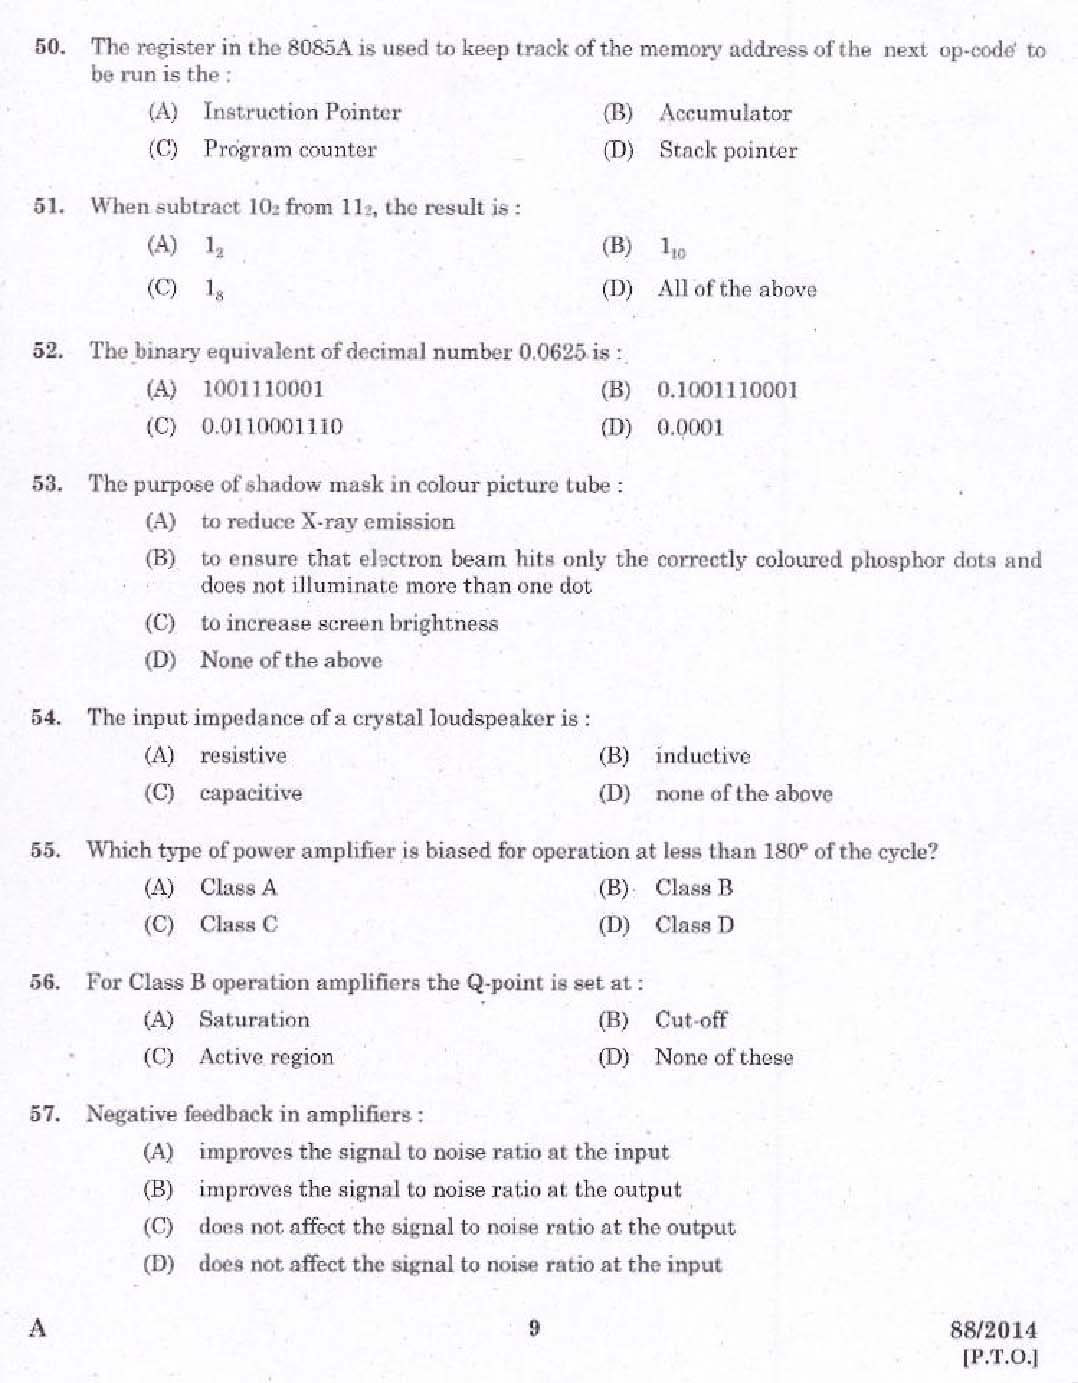 Kerala PSC Junior Instructor Exam Question Paper Code 882014 7